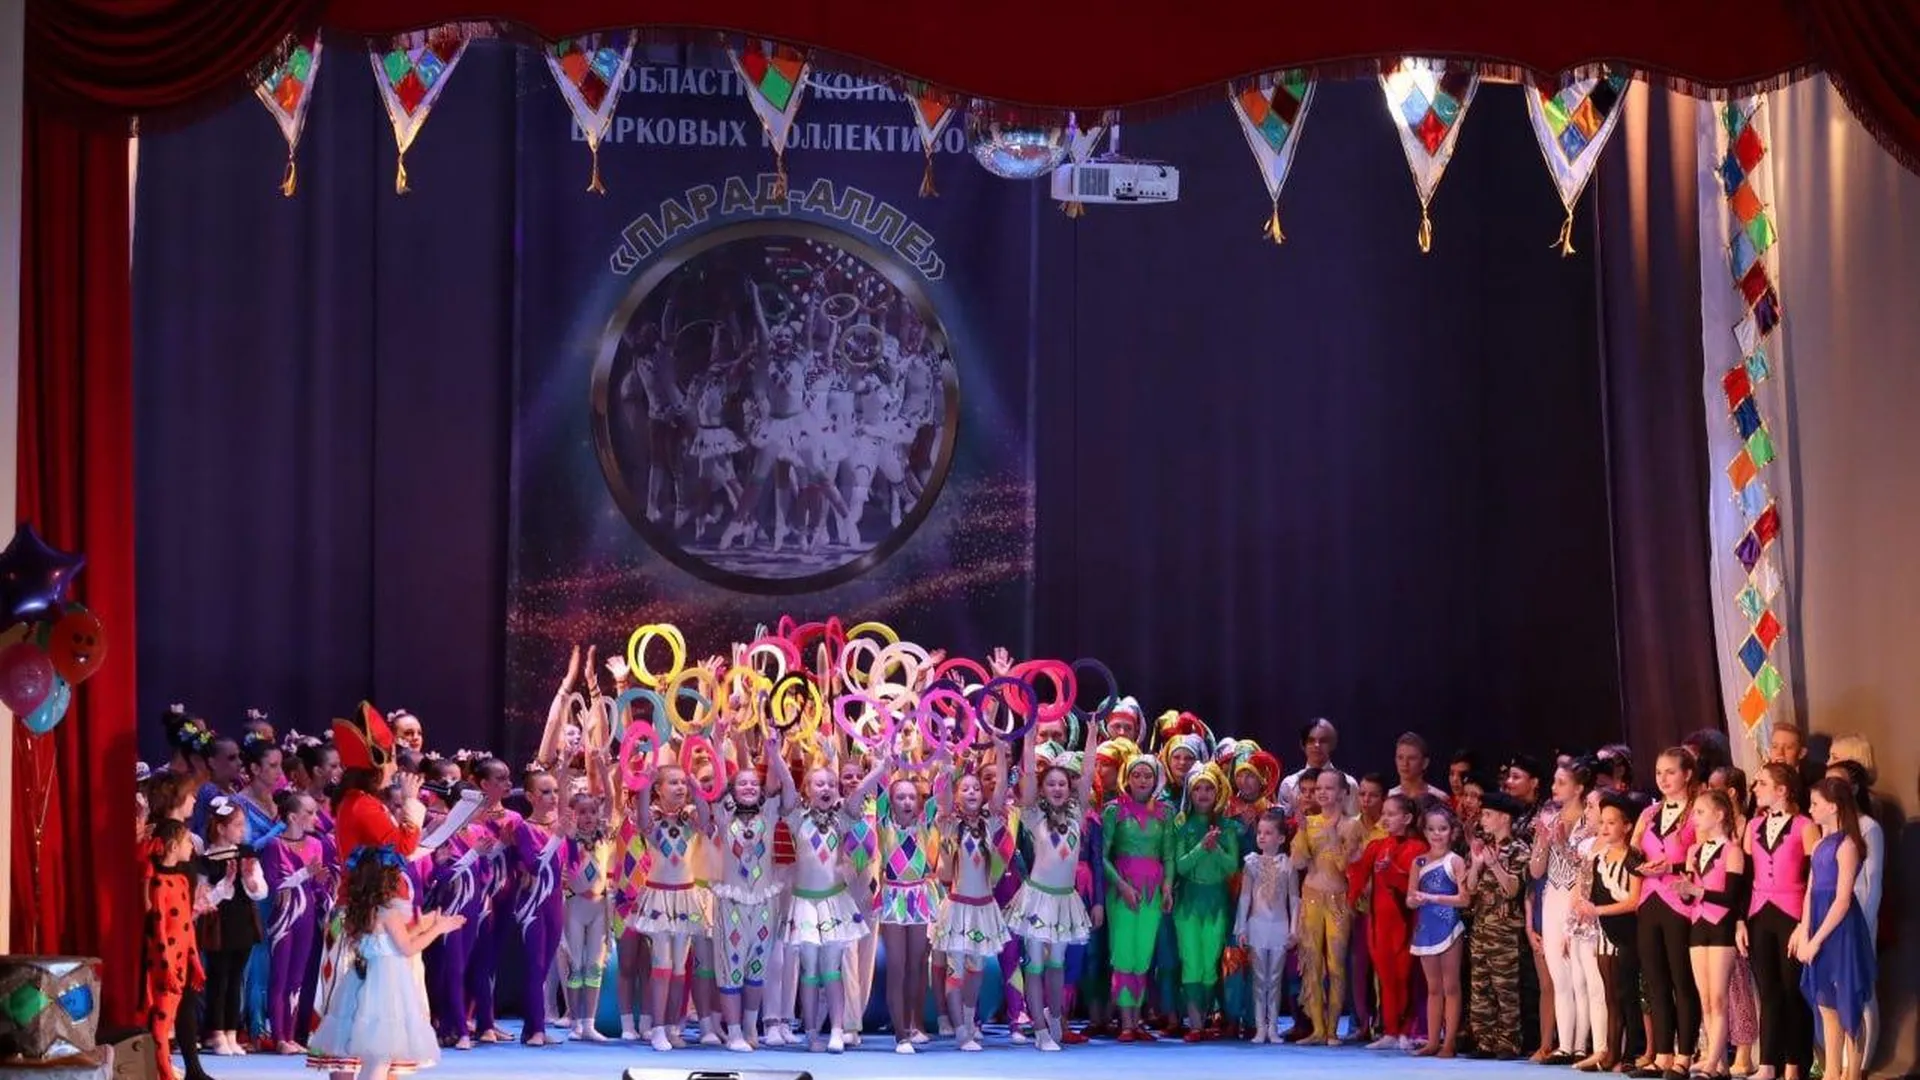 Конкурс цирковых коллективов «Парад-алле» состоится в Подмосковье 6 апреля